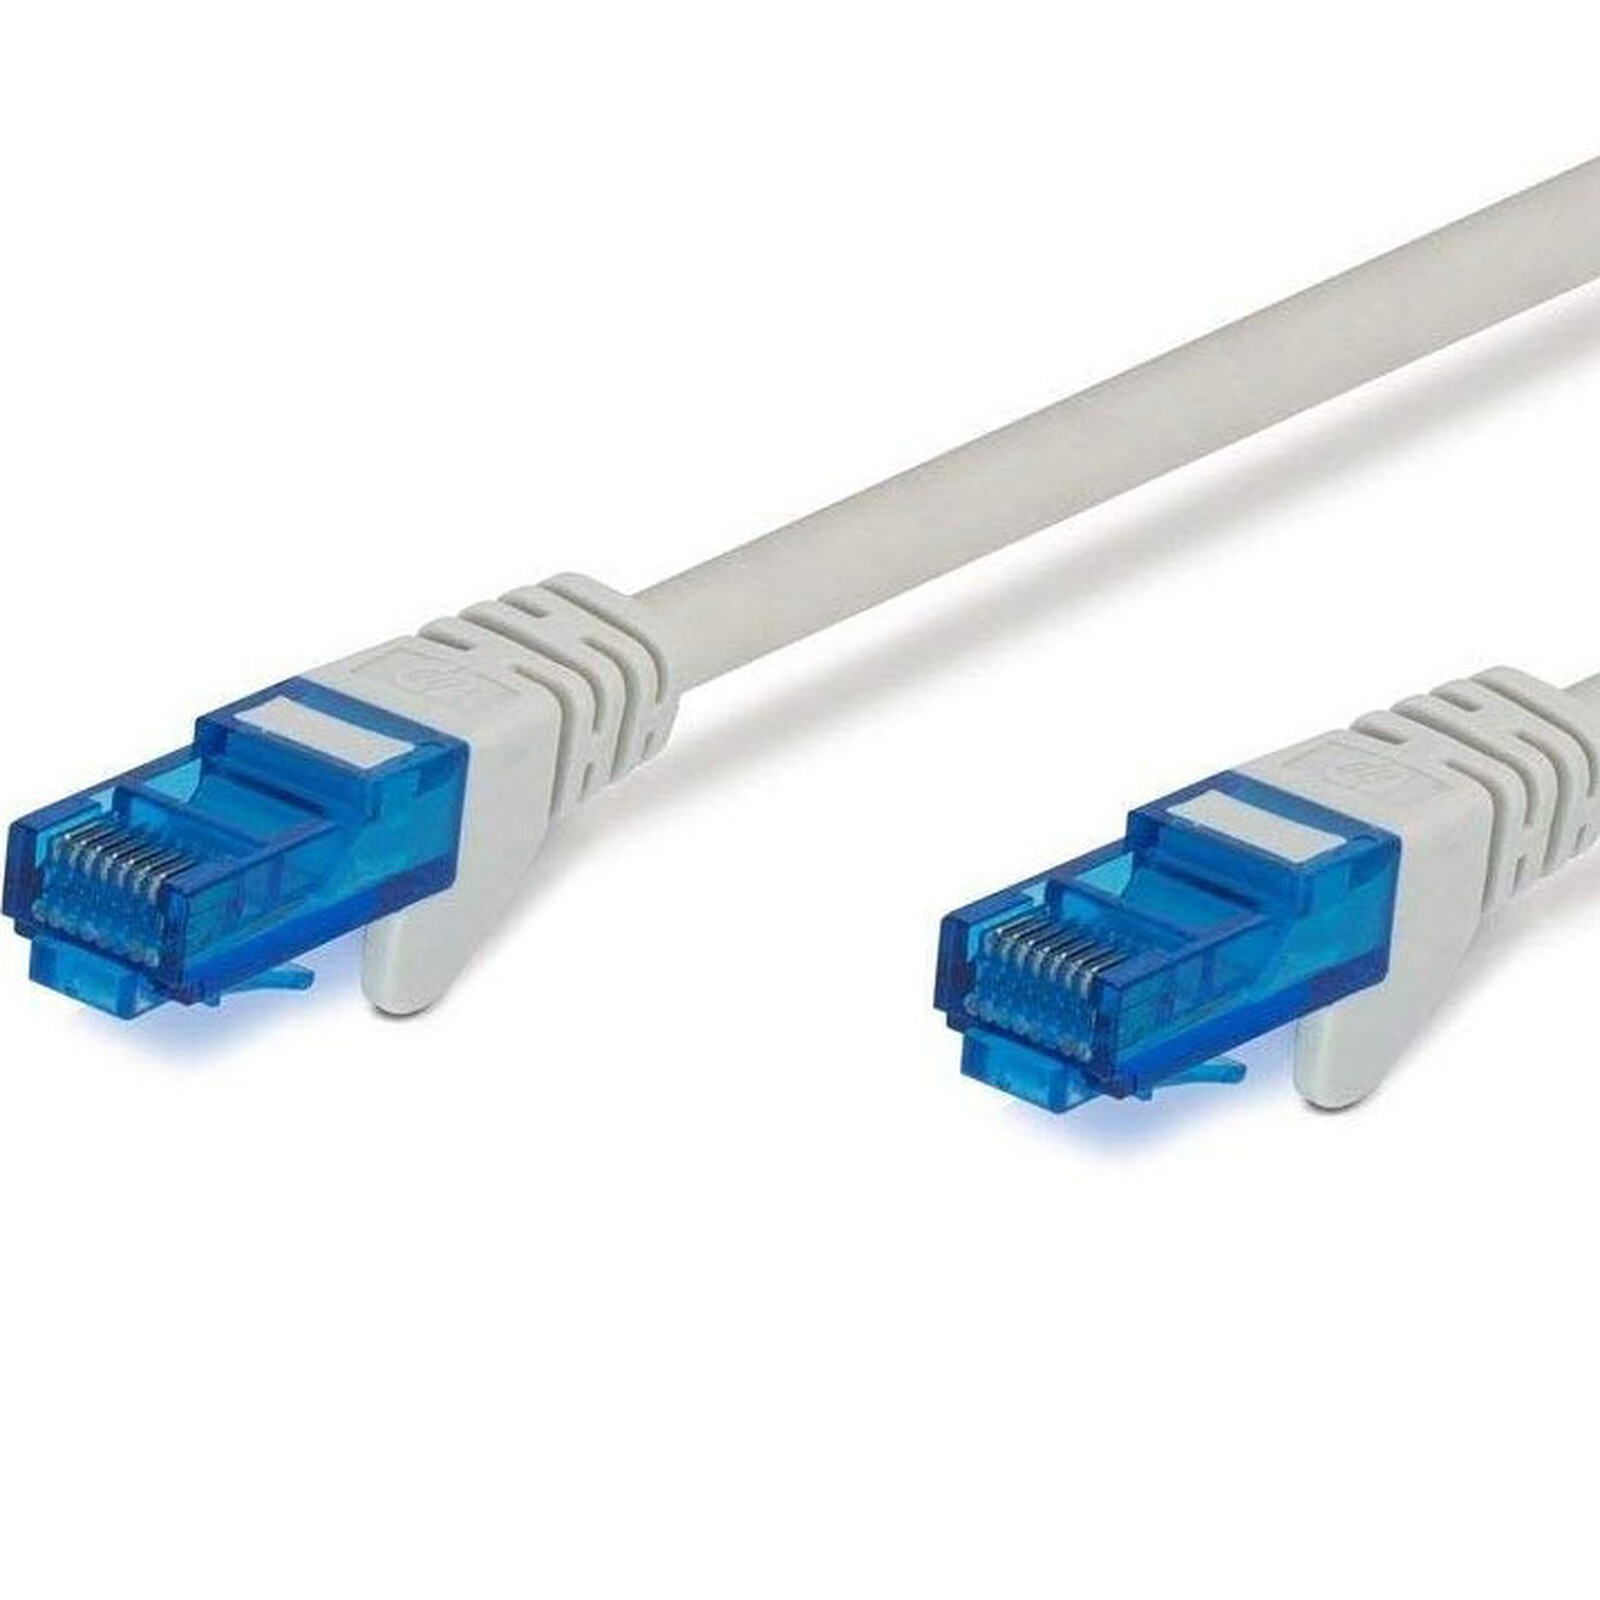 Câble RJ45 catégorie 6 F/UTP 3 m (Beige) - Câble RJ45 - Garantie 3 ans LDLC